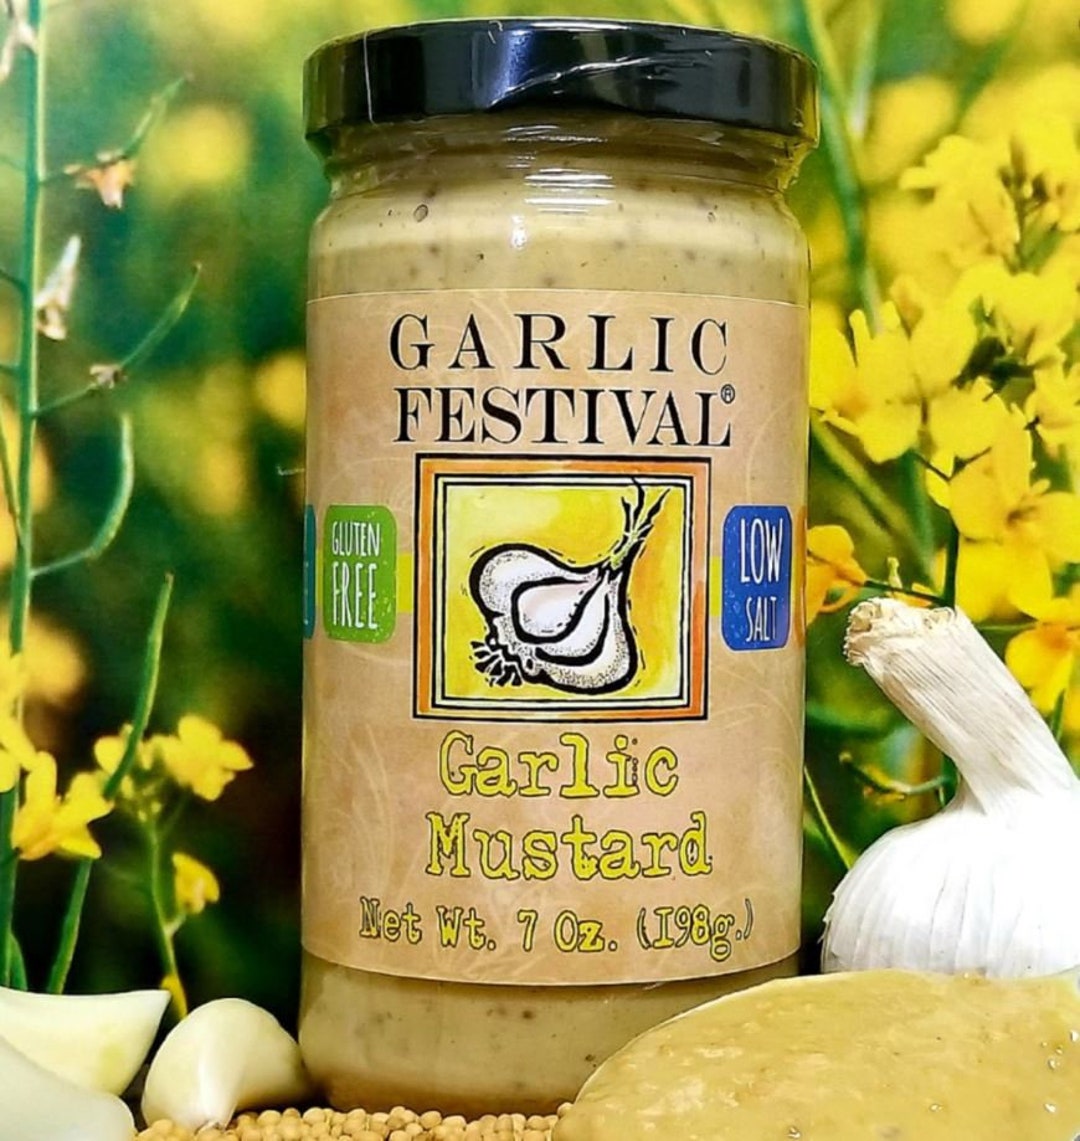 Garlic Festival Foods Low Sodium Garli Garni Garlic Seasoning 2.6 oz